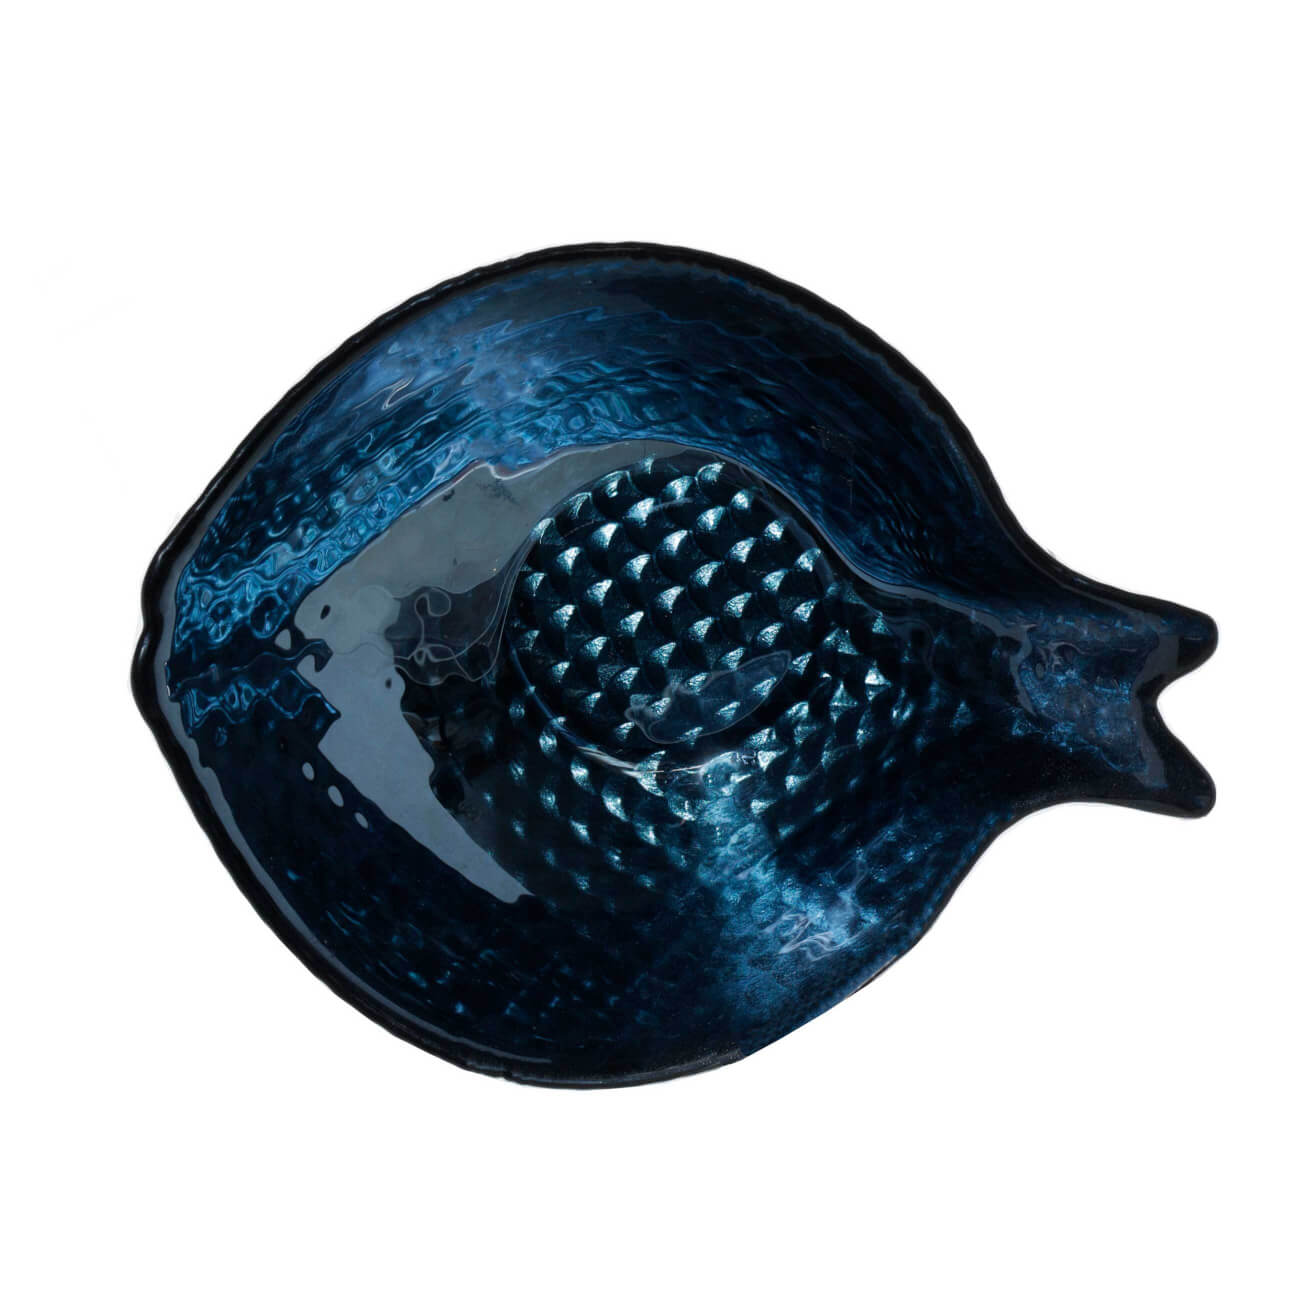 Пиала, 13х5 см, стекло, синяя, Рыба, Fish print